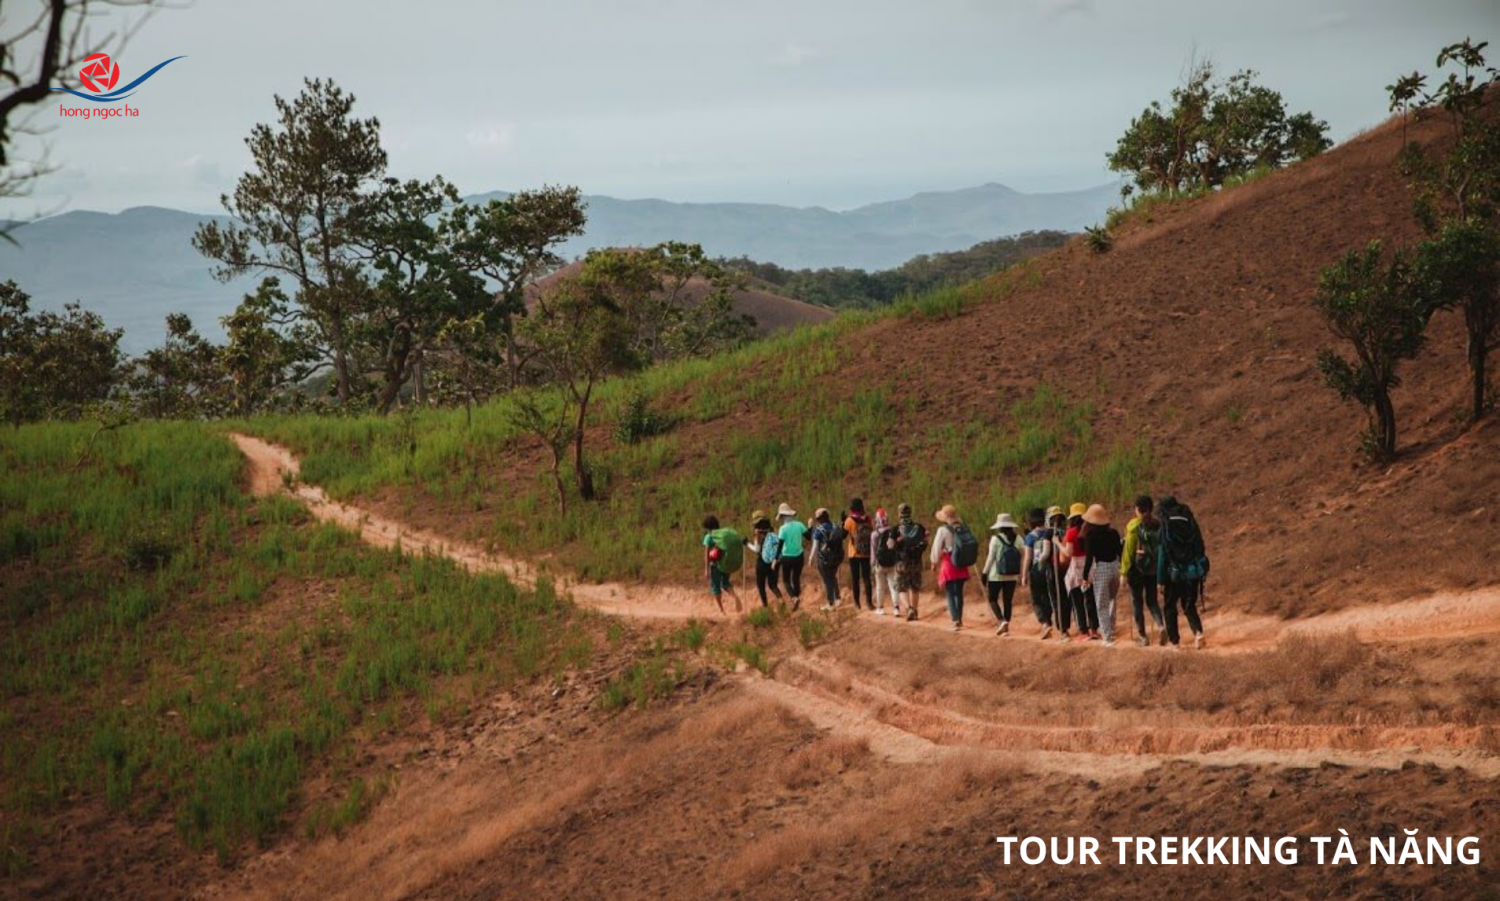 Tour Trekking Tà Năng - Phan Dũng (2 Ngày 1 Đêm)